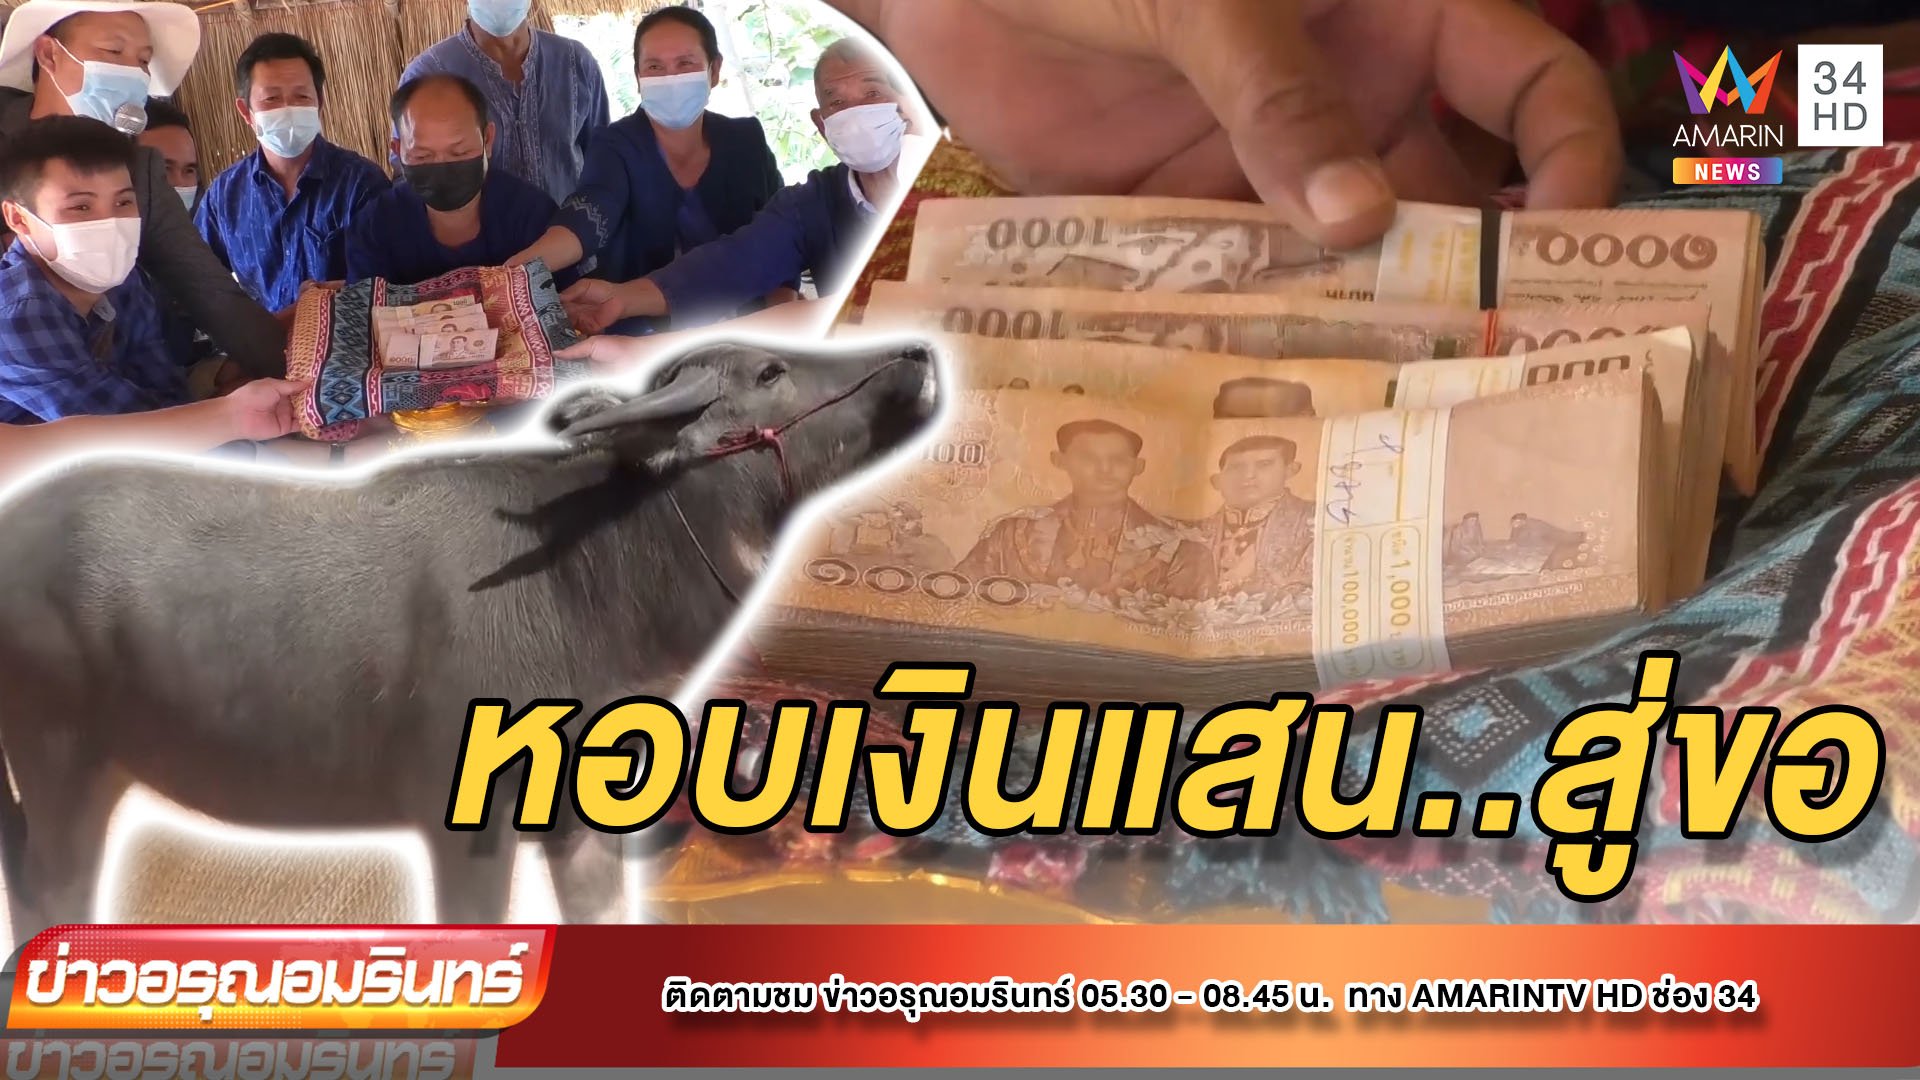 หนุ่มหอบเงินสินสอด 6 แสน สู่ขอ “น้องแต้ว” ควายไทยแท้วัย 18 เดือน | ข่าวอรุณอมรินทร์ | 15 ธ.ค. 64 | AMARIN TVHD34